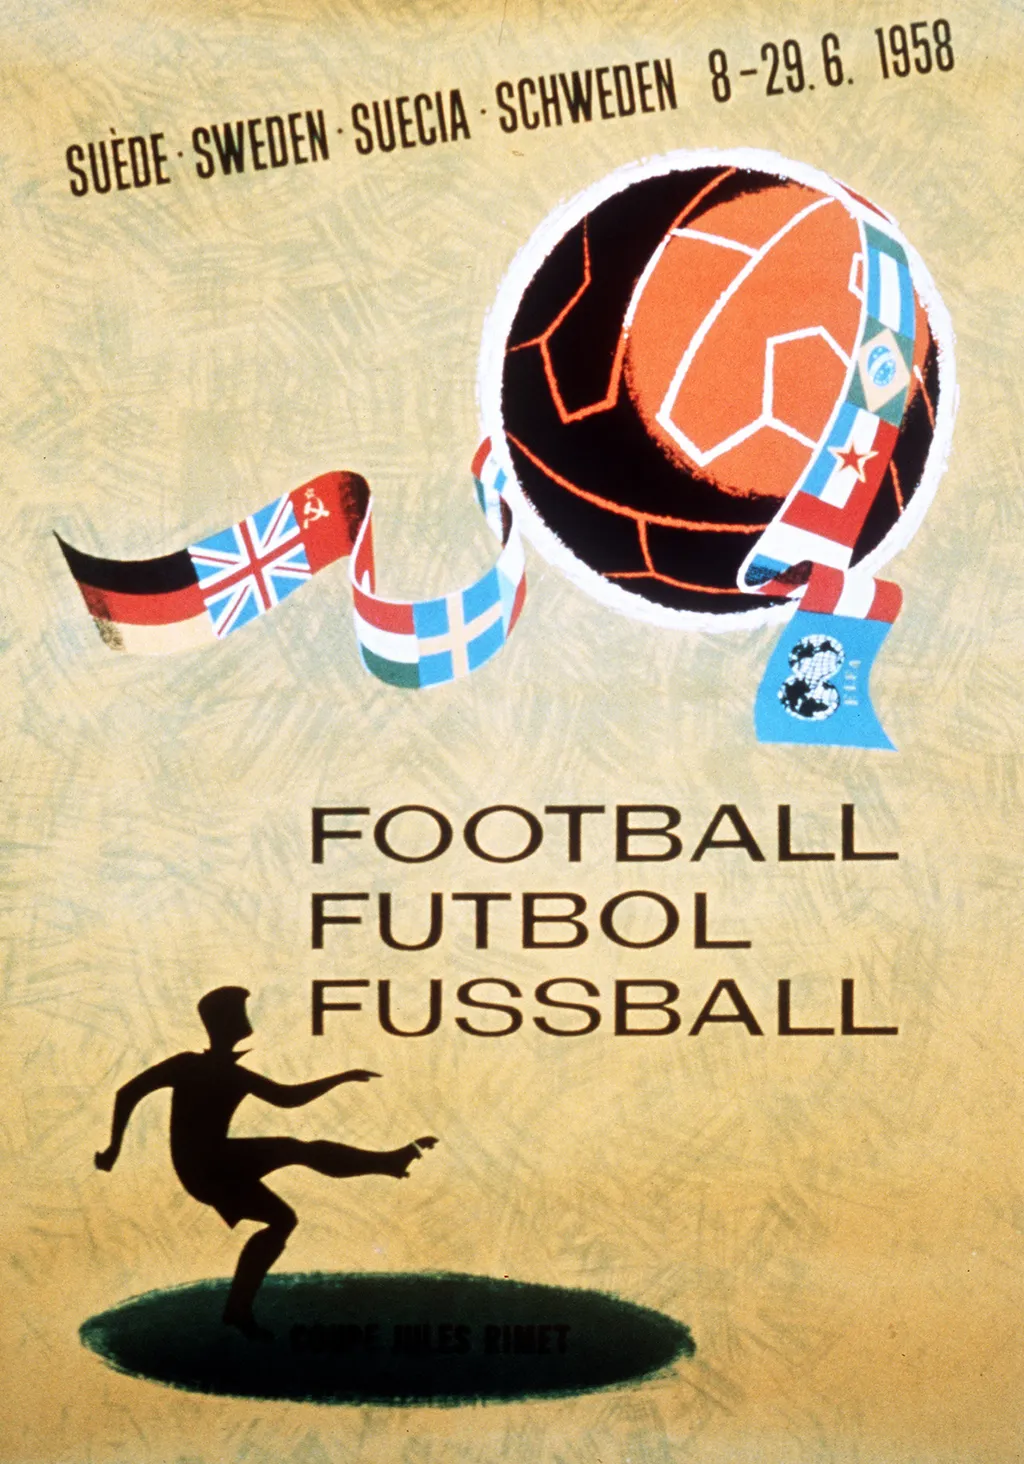 Labdarúgó-világbajnokság, labdarúgóvébé, futballvébé, labdarúgás, hivatalos plakát, poszter, 1958, Svédország 